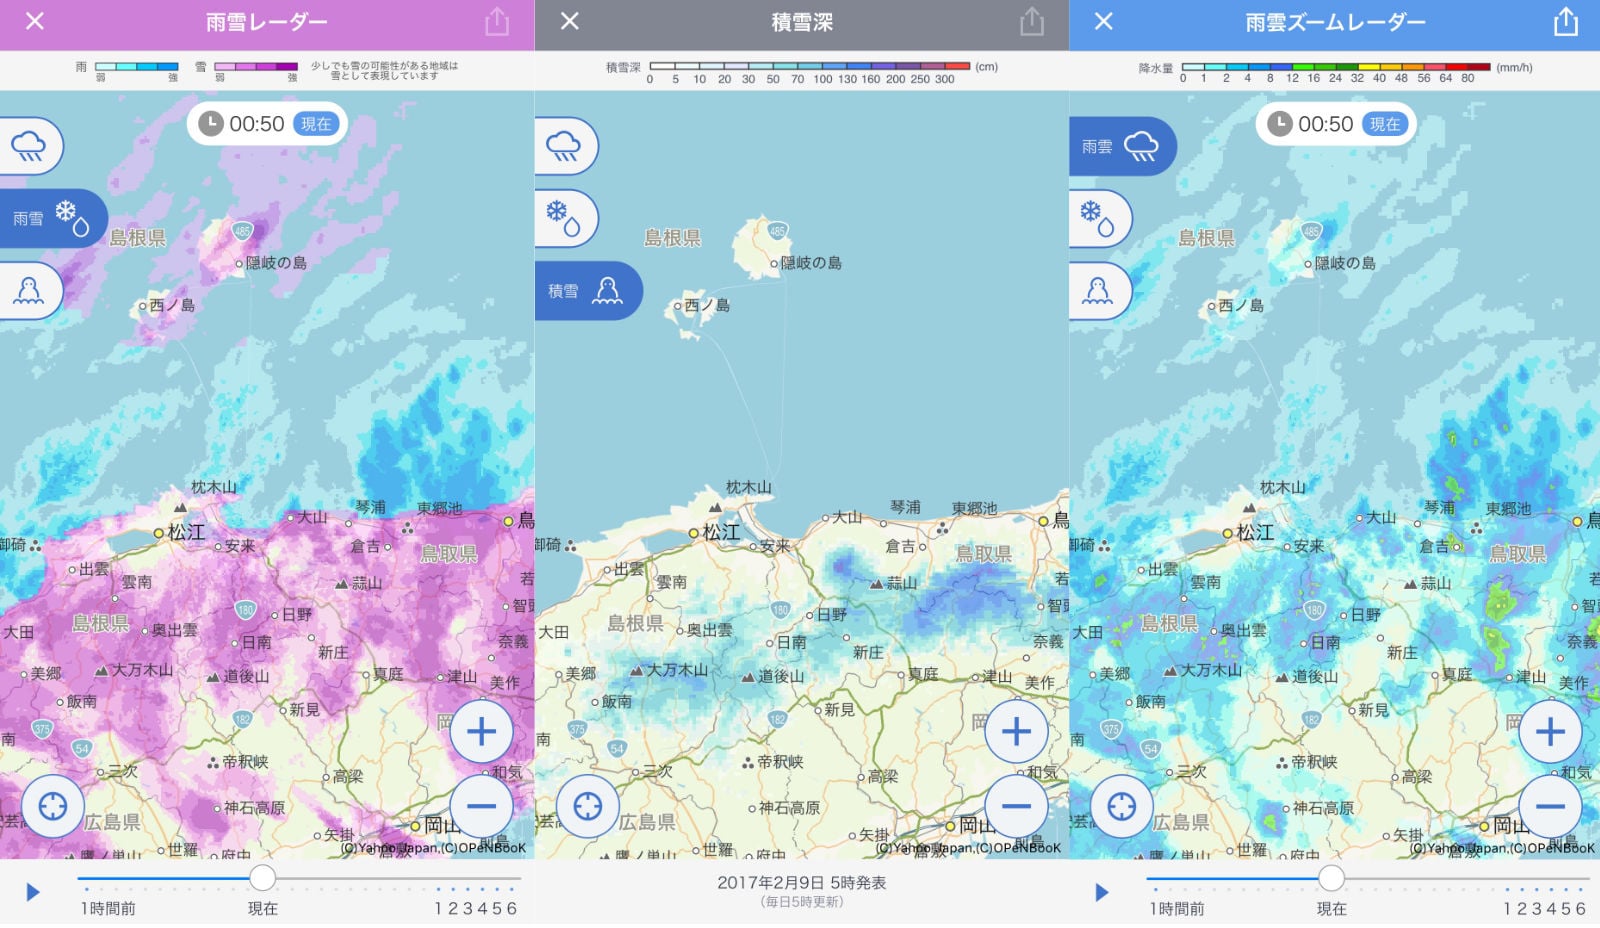 雪雲レーダーや積雪量まで追加されて Yahoo天気 が最強お天気アプリに Ipod Love